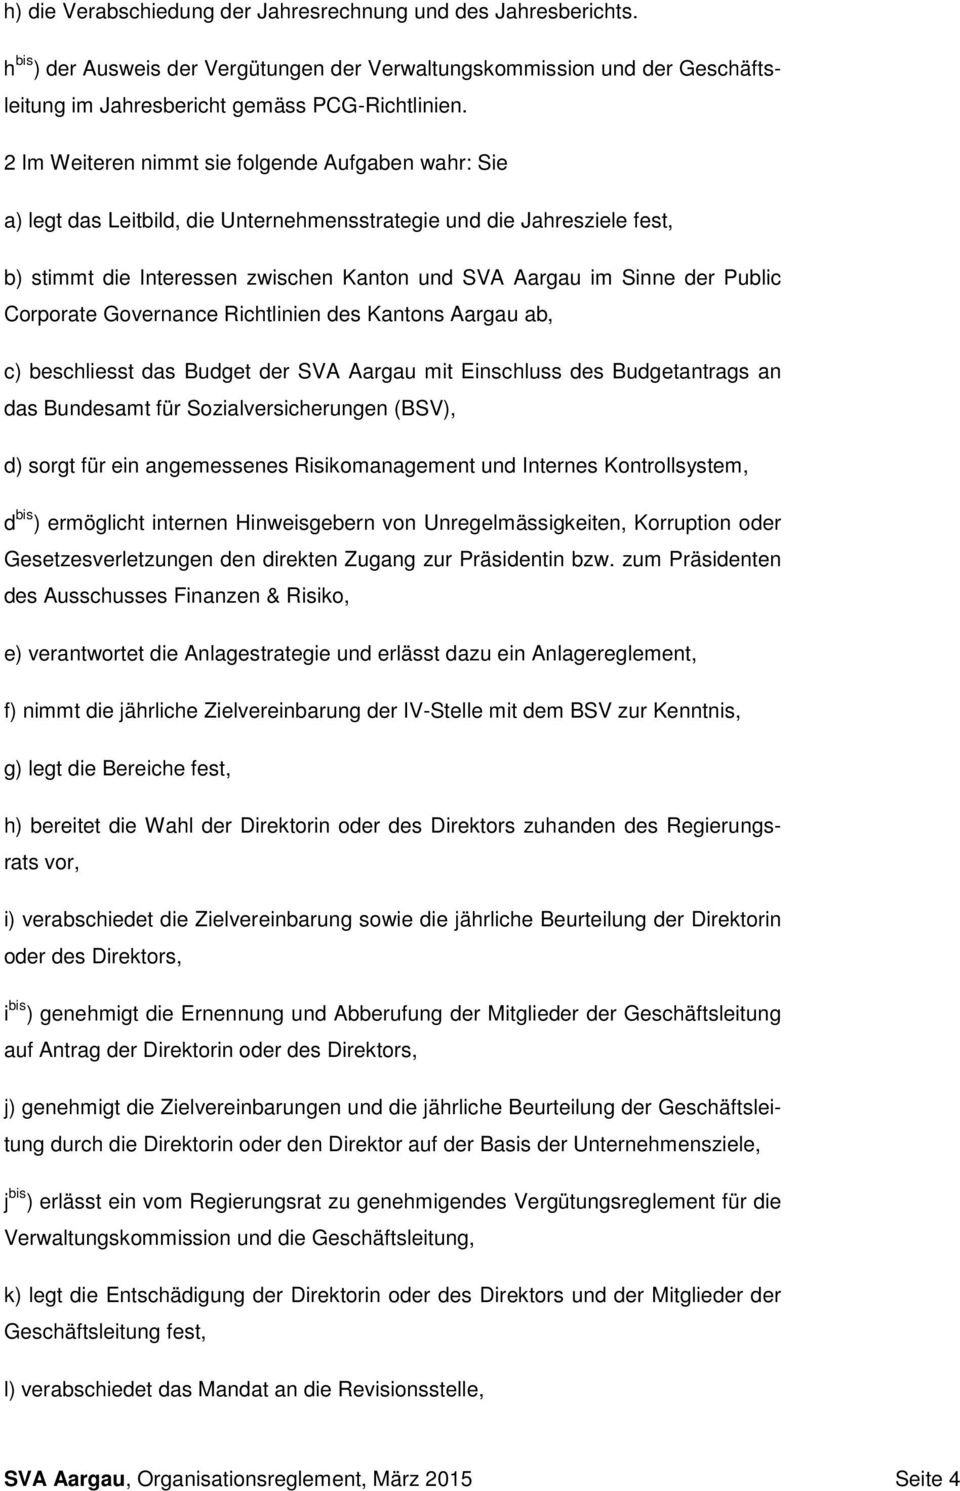 Public Corporate Governance Richtlinien des Kantons Aargau ab, c) beschliesst das Budget der SVA Aargau mit Einschluss des Budgetantrags an das Bundesamt für Sozialversicherungen (BSV), d) sorgt für